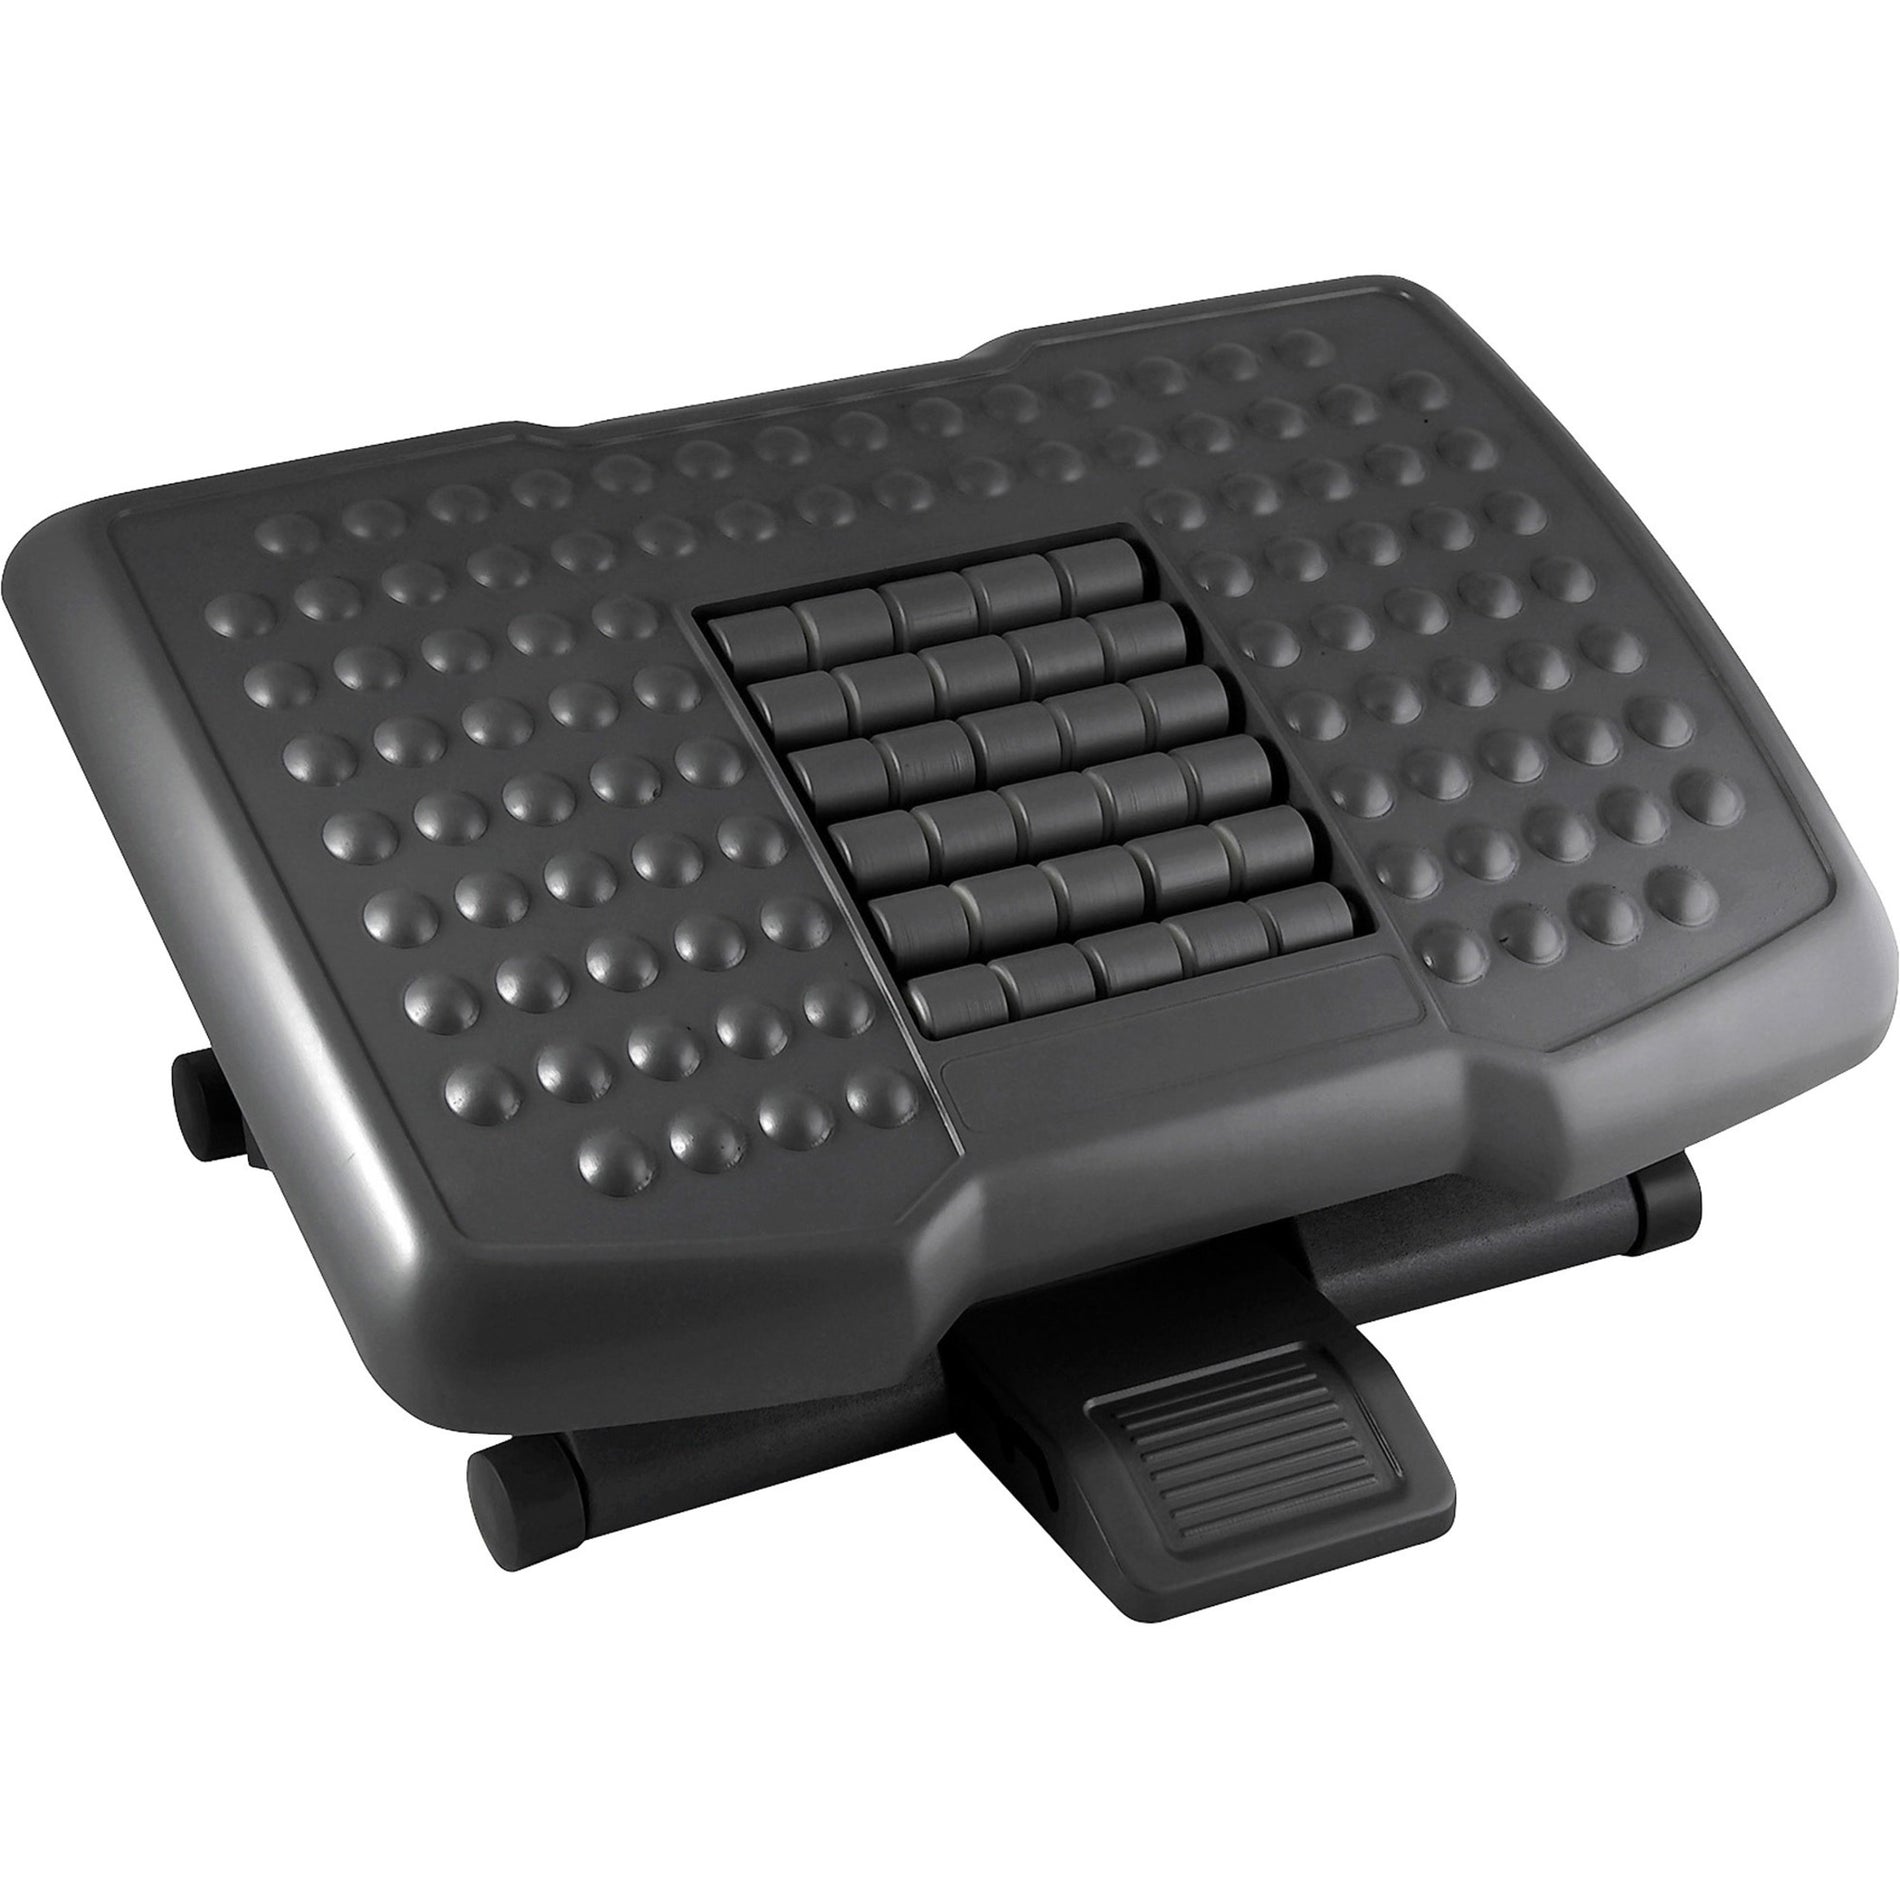 Kantek FR750 Premium Ergonomic Footrest with Rollers, Adjustable, Black